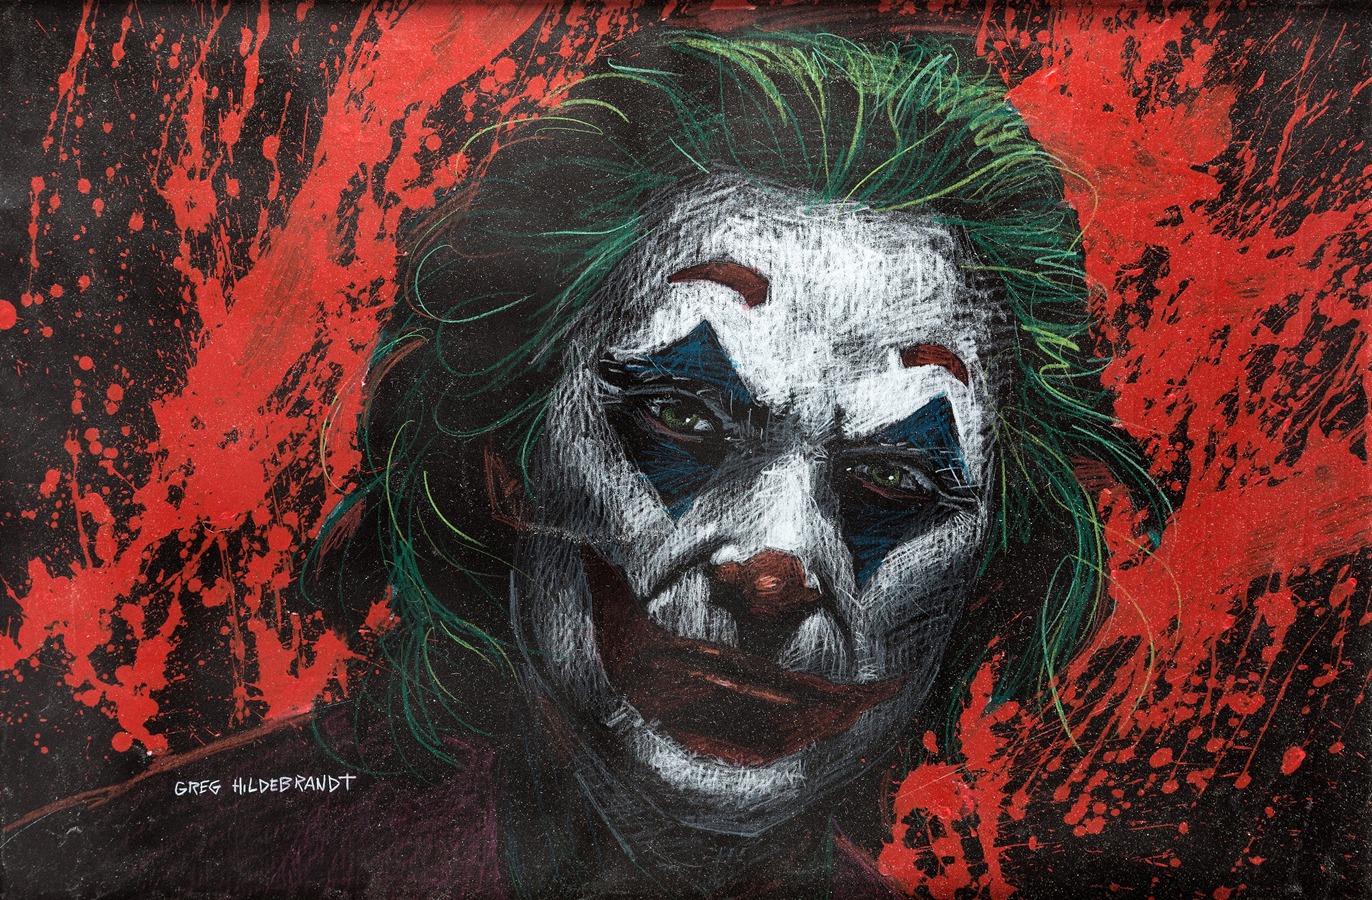 Greg Hildebrandt - The Joker